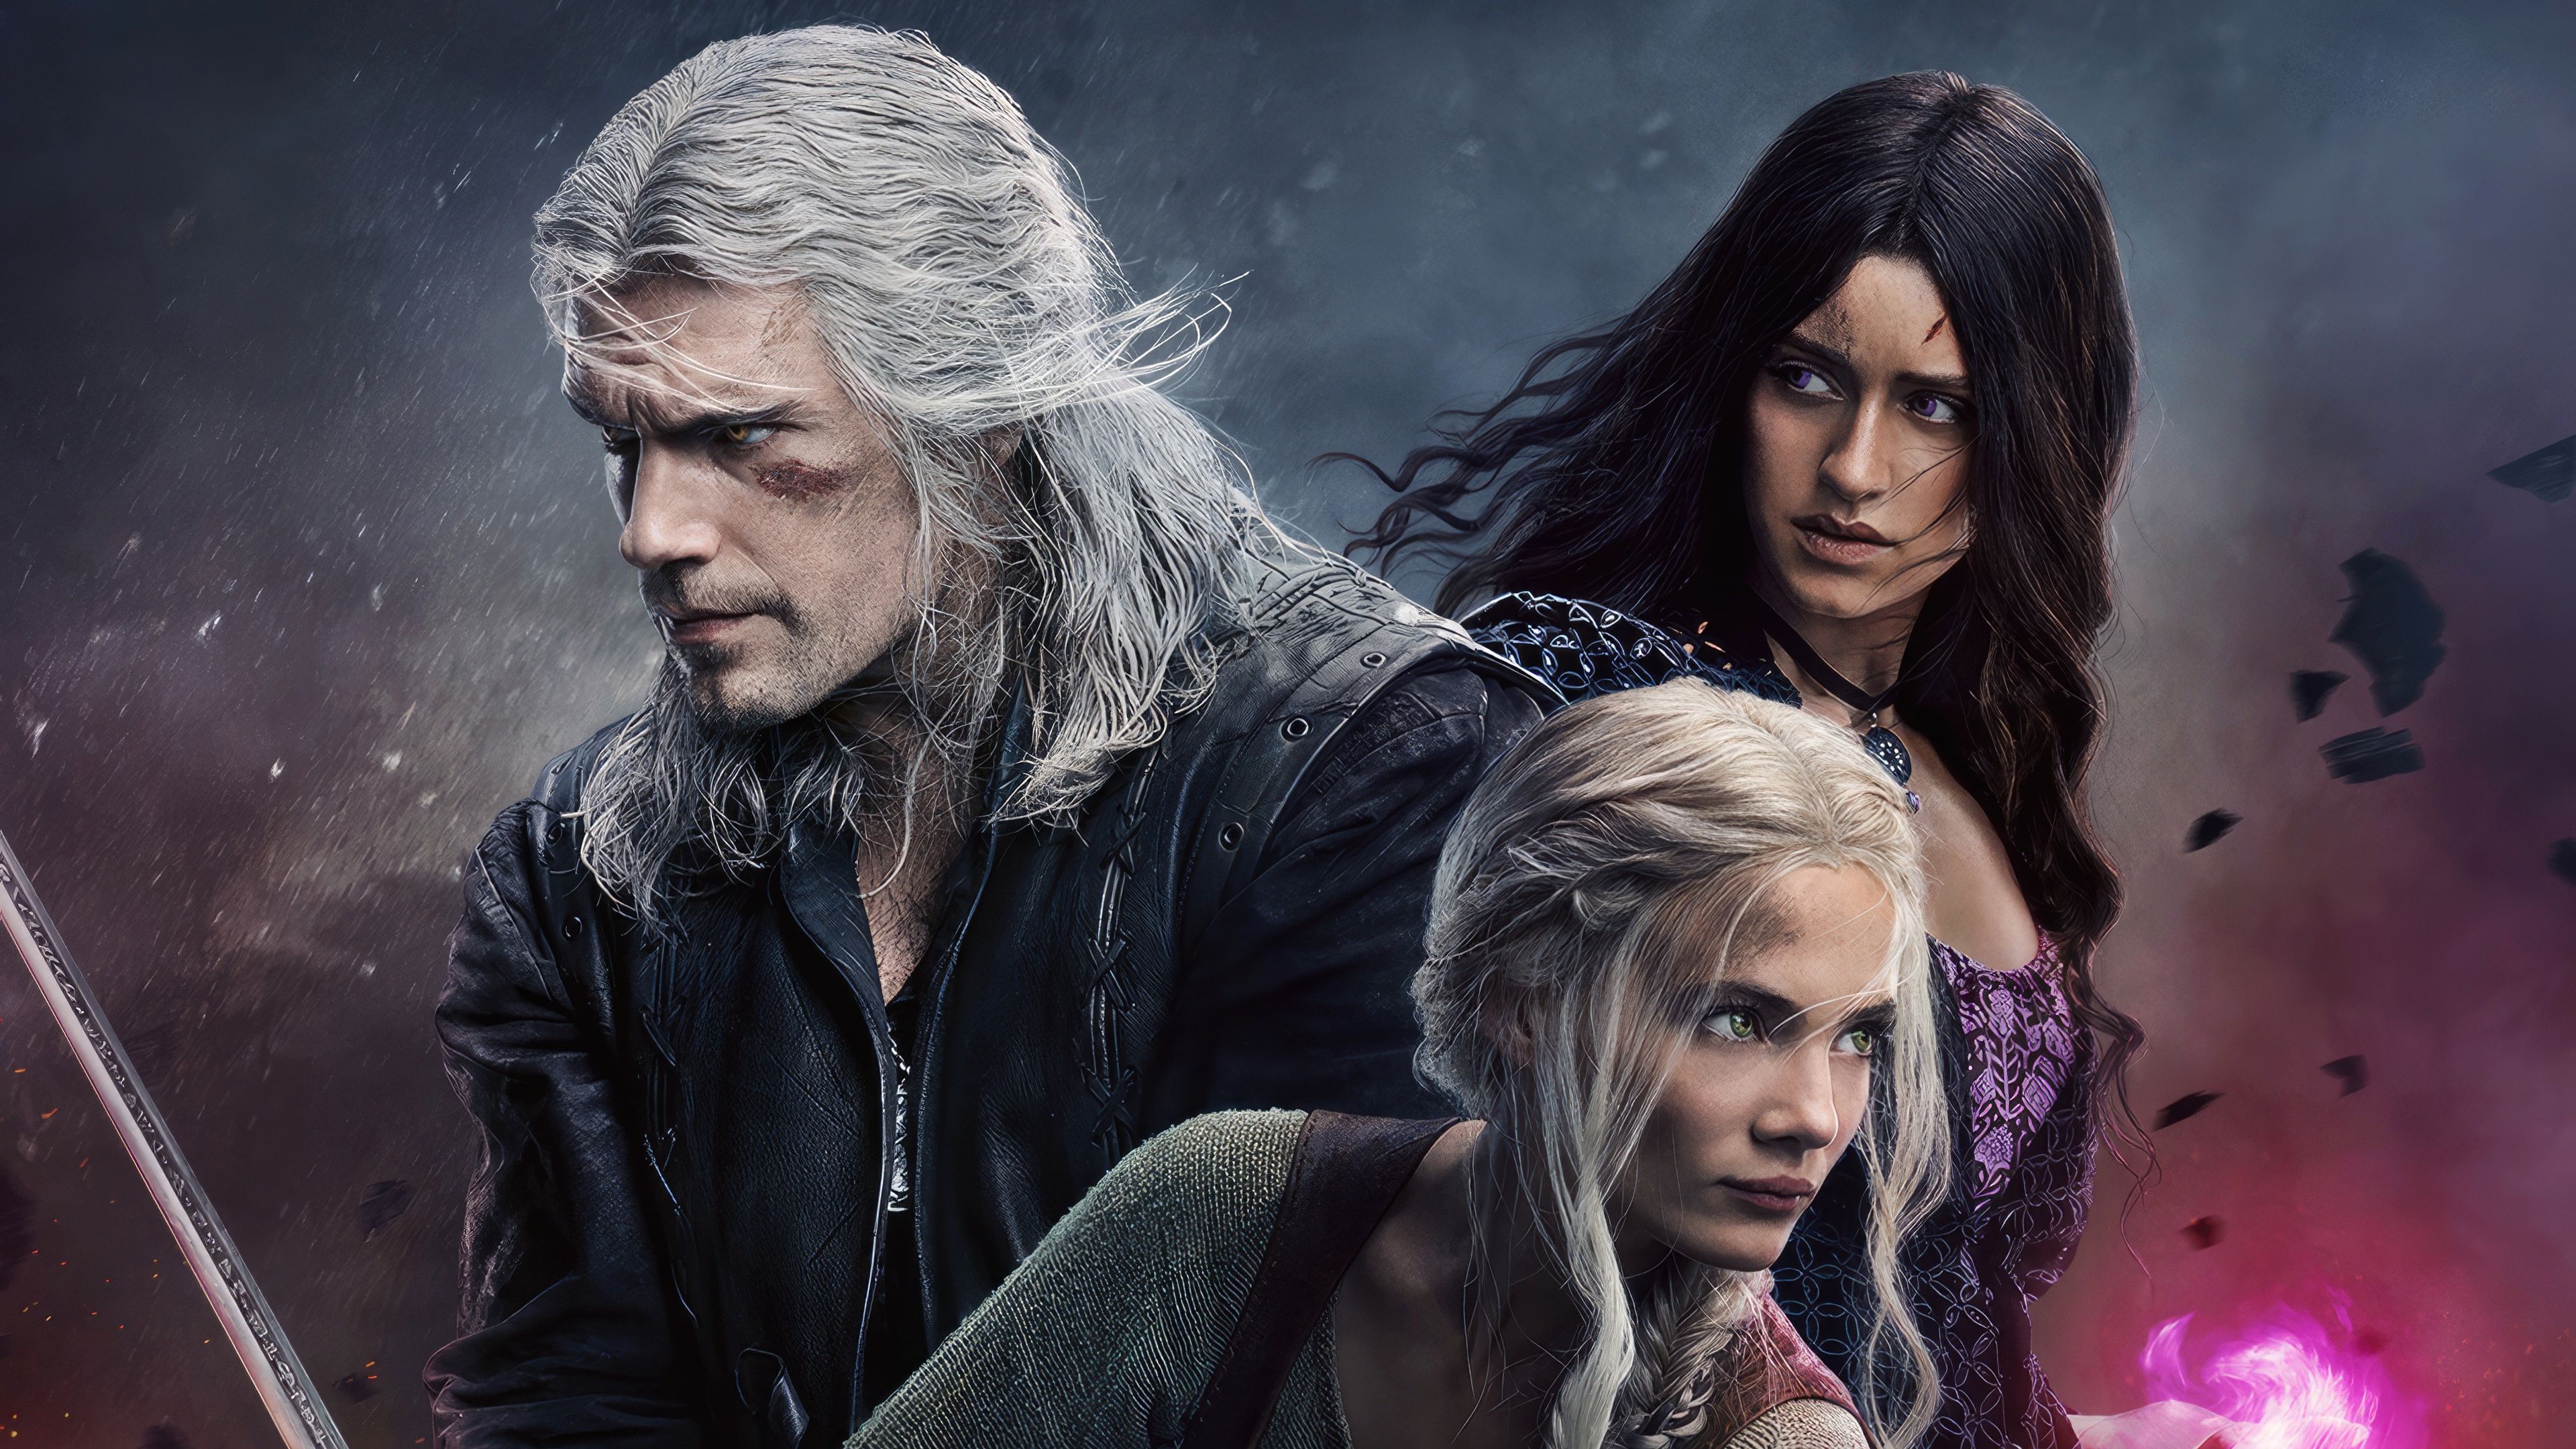 Na imagem observamos os personagens principais do seriado de fantasia The Witcher, Geralt de Rívia, Yennefer de Vengerberg e a Princesa Cirilla de Cintra.